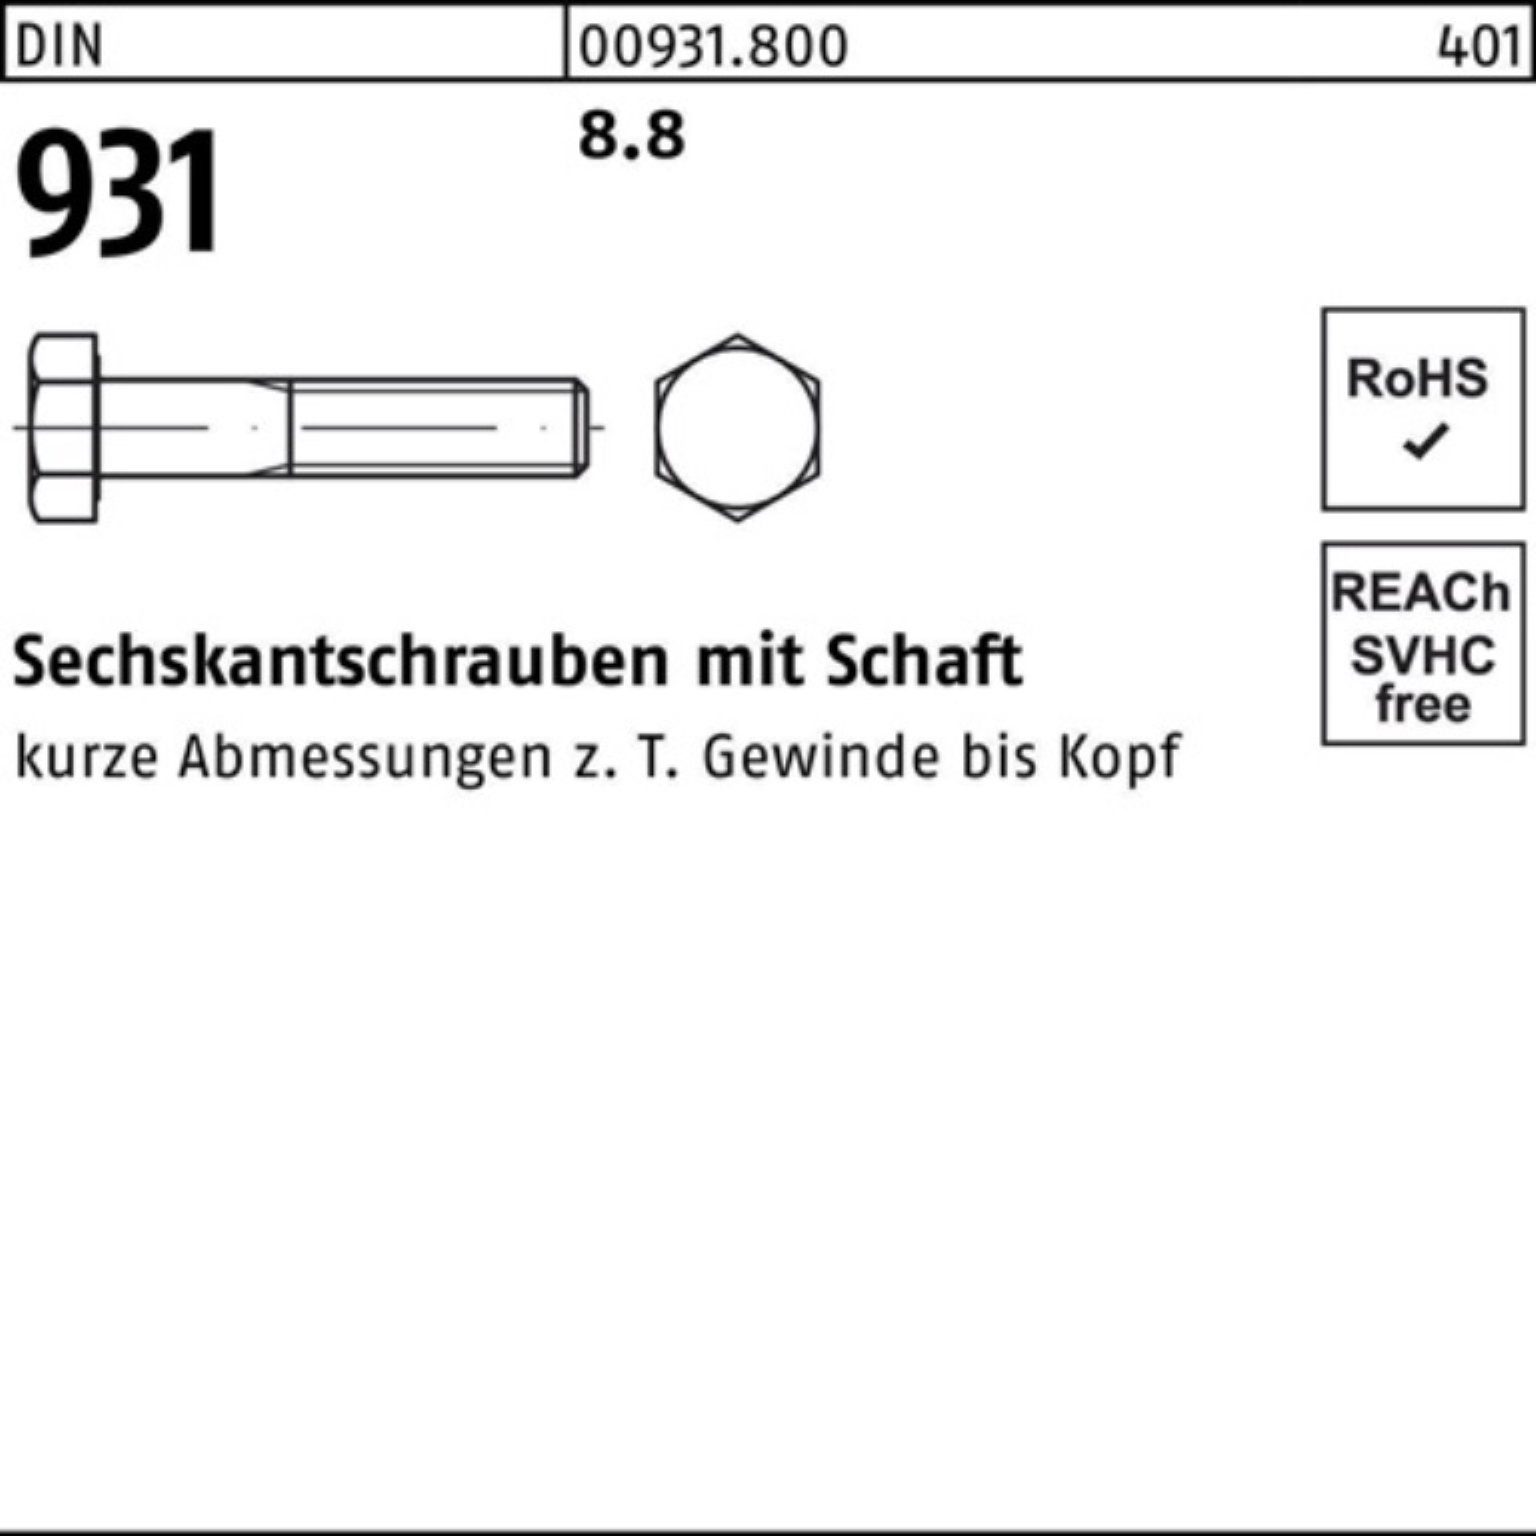 Reyher Sechskantschraube 100er Pack Sechskantschraube 8.8 Schaft 1 Stück 931 190 M48x DIN DIN